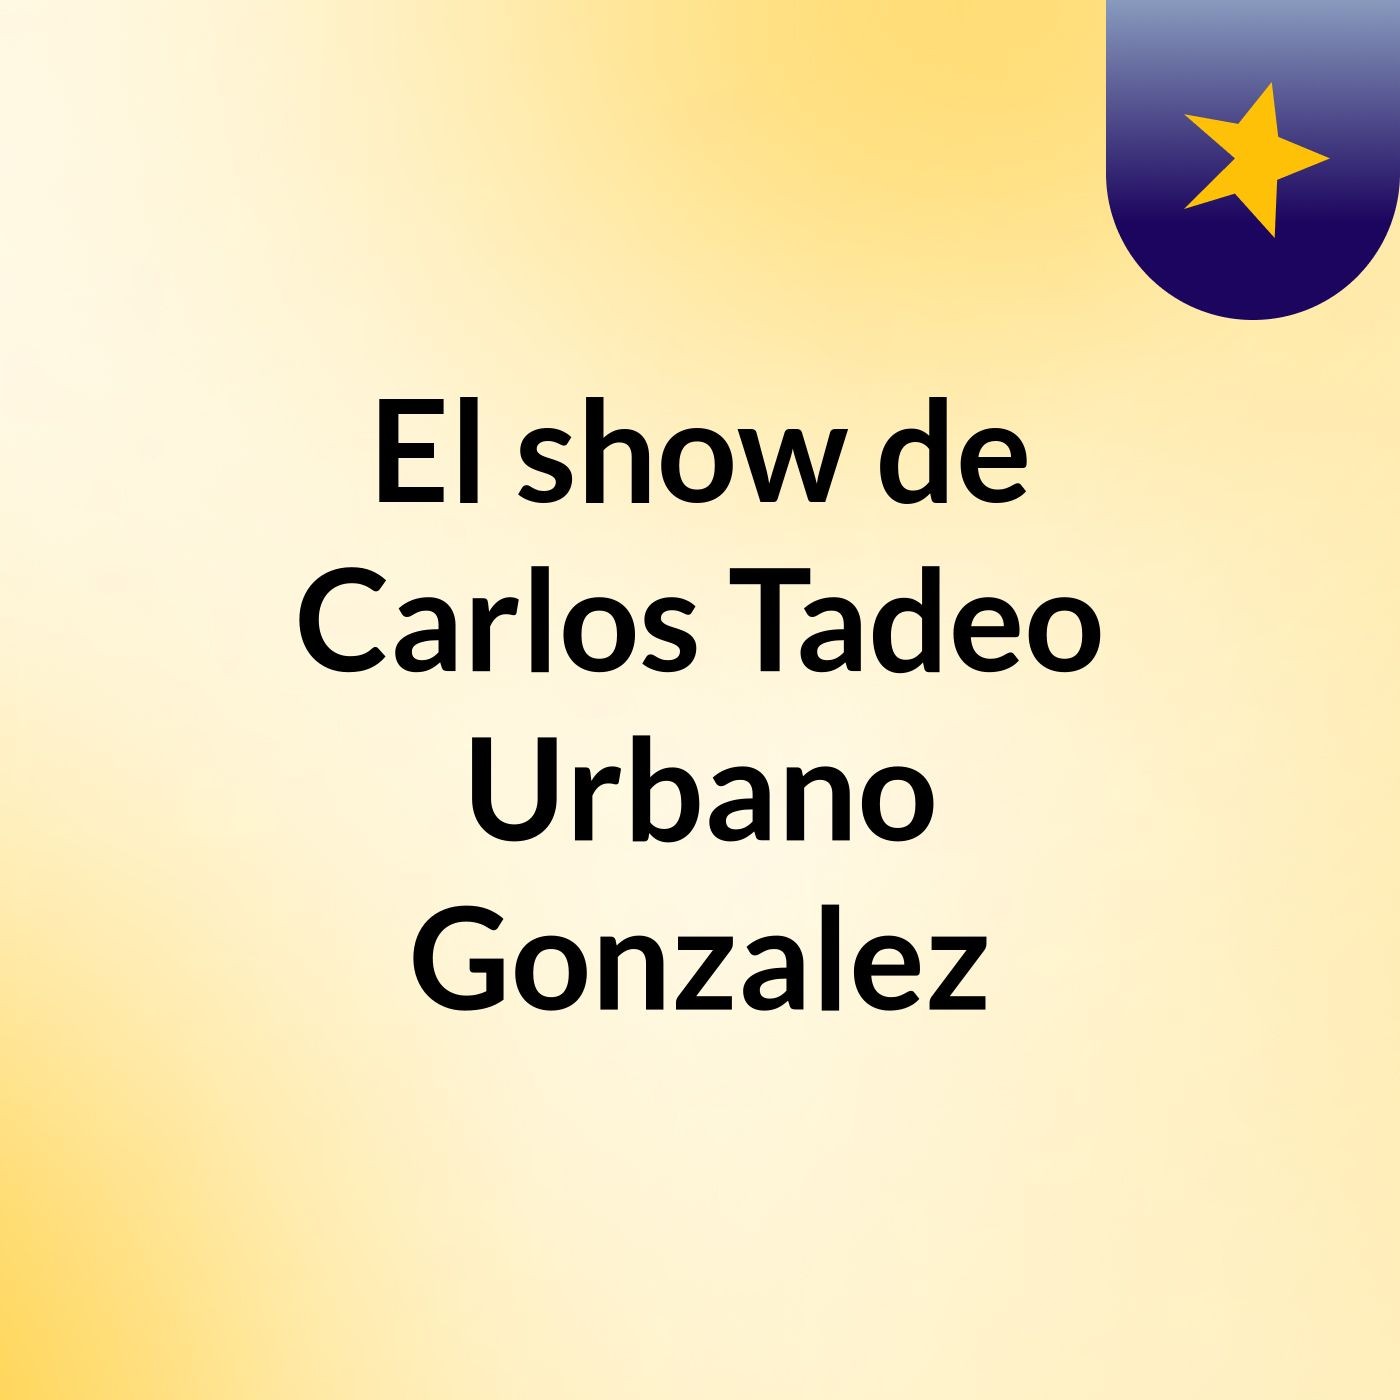 El show de Carlos Tadeo Urbano Gonzalez